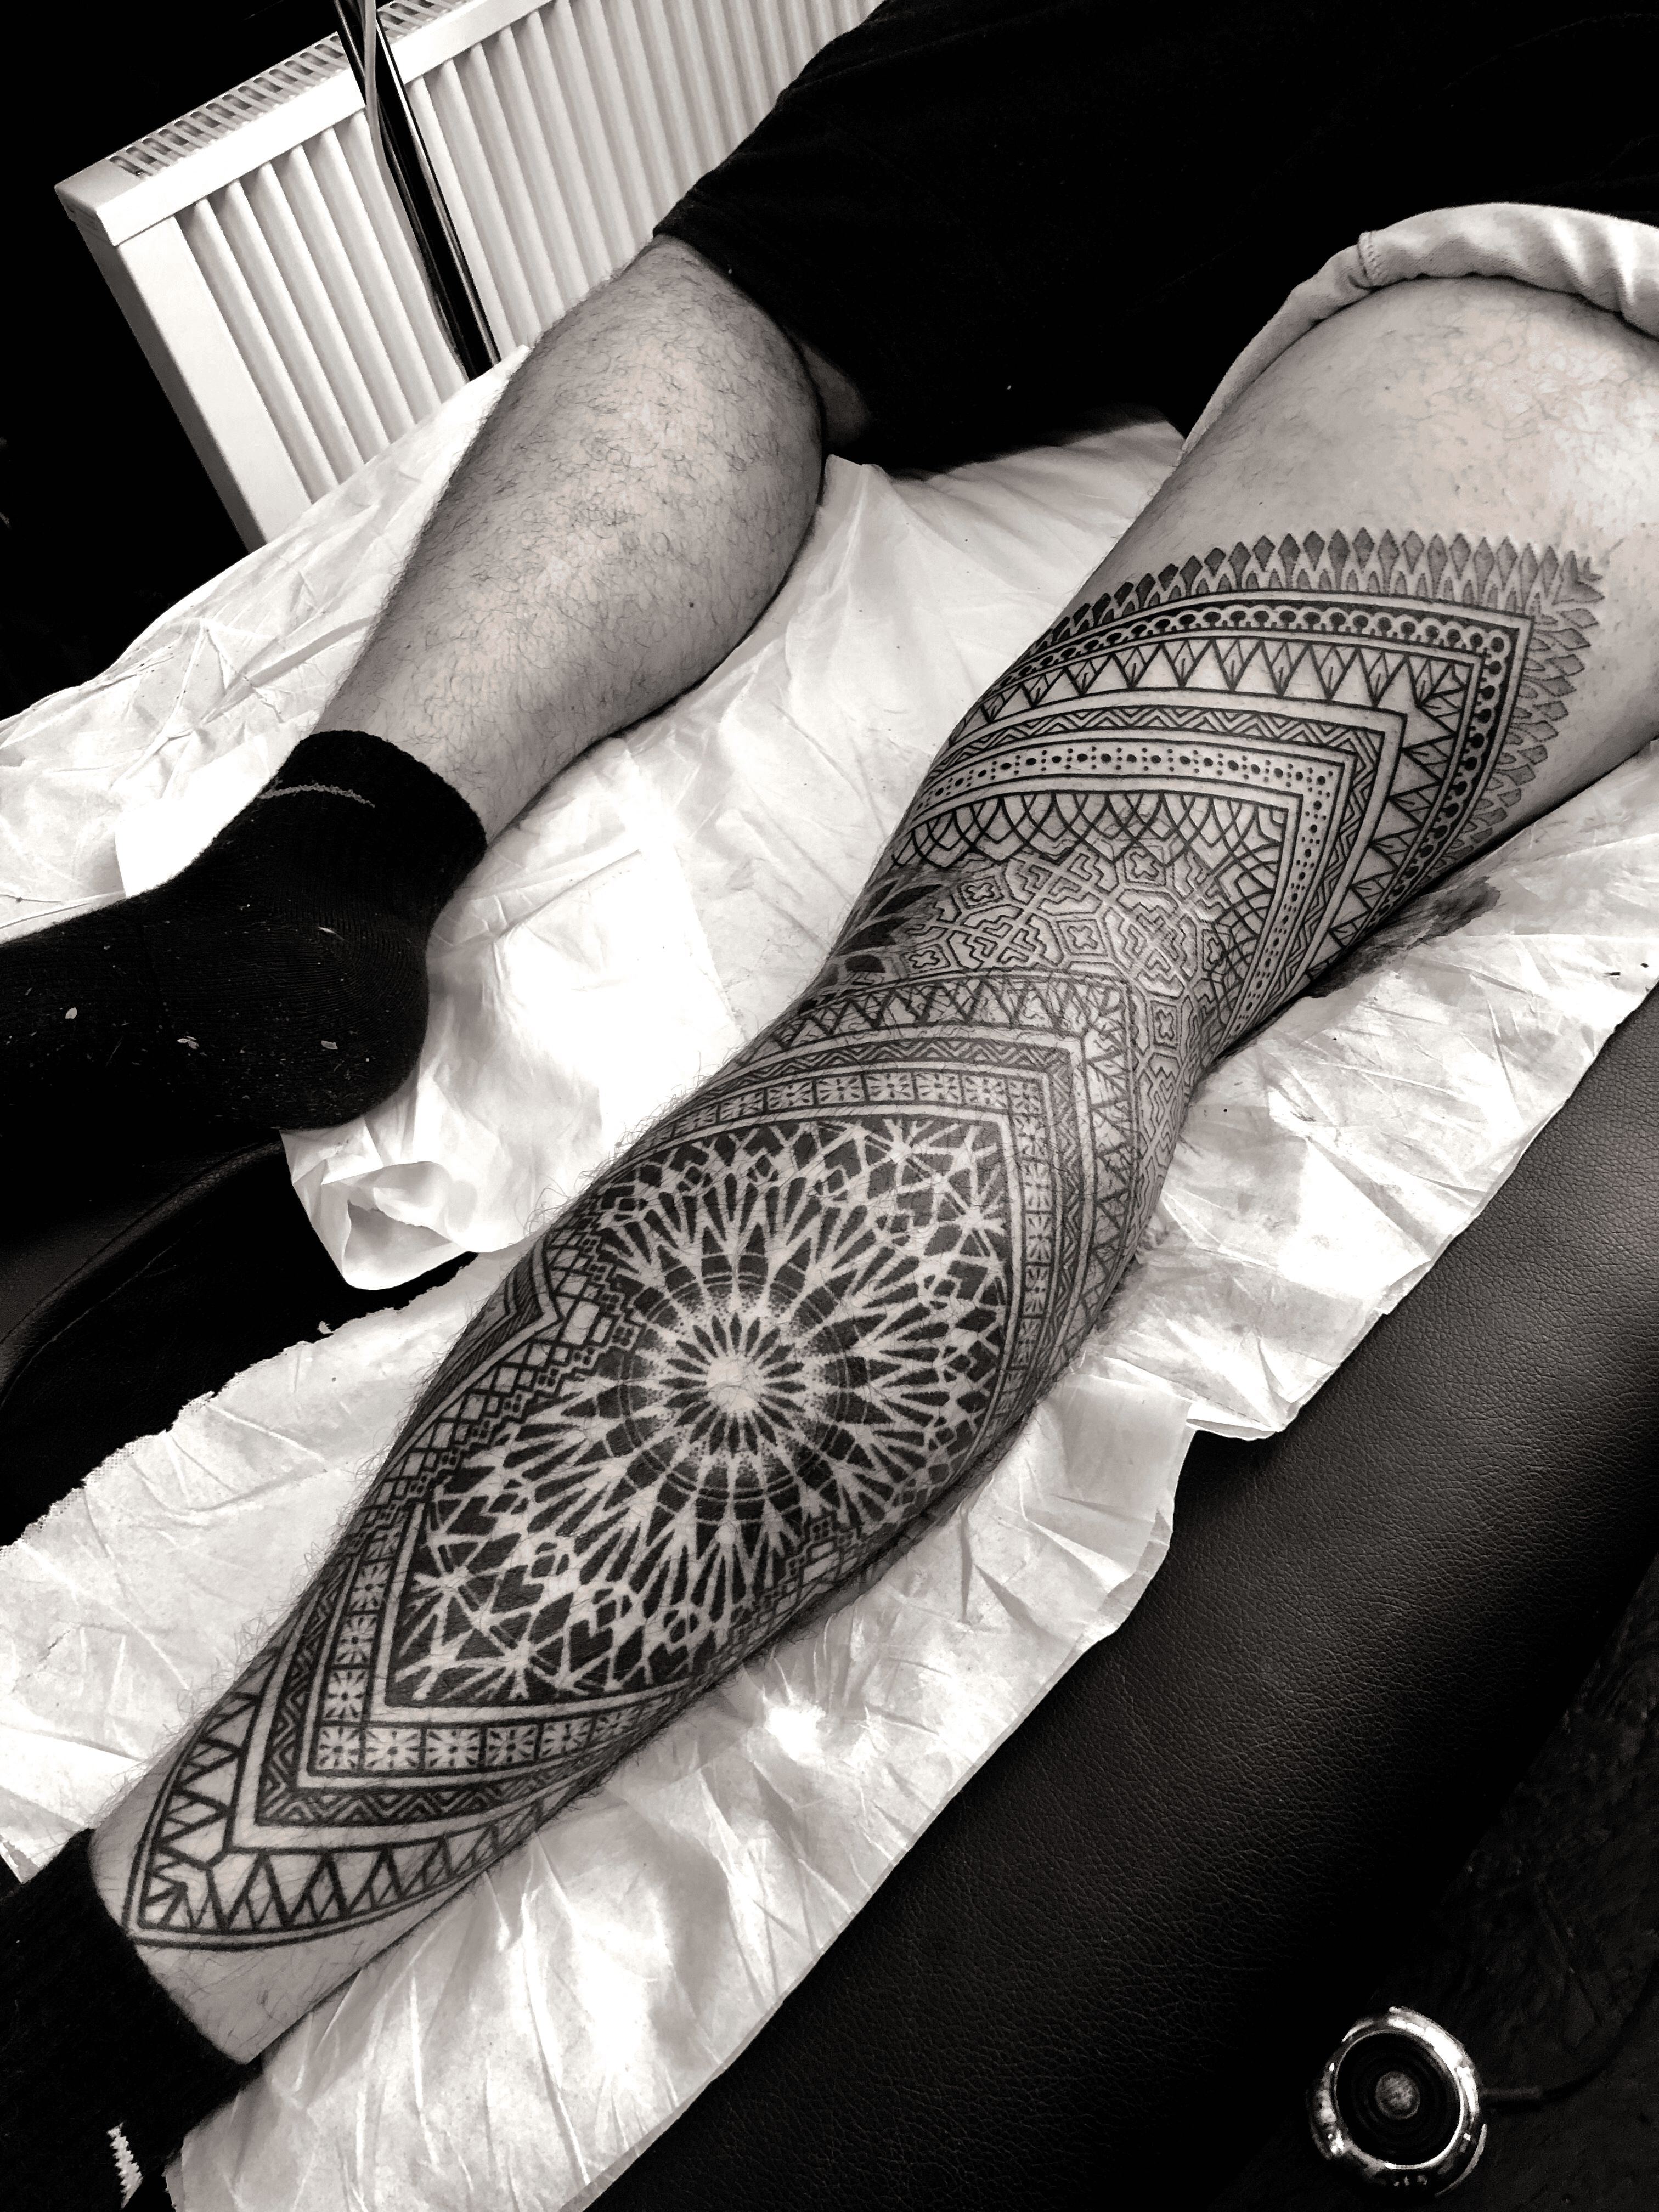 Cherub  on Instagram More geo sleeves please     geometrictattoos  geometrictattoo mandalatattoo mandalatat  Tattoos Dot work tattoo  Geometric tattoo